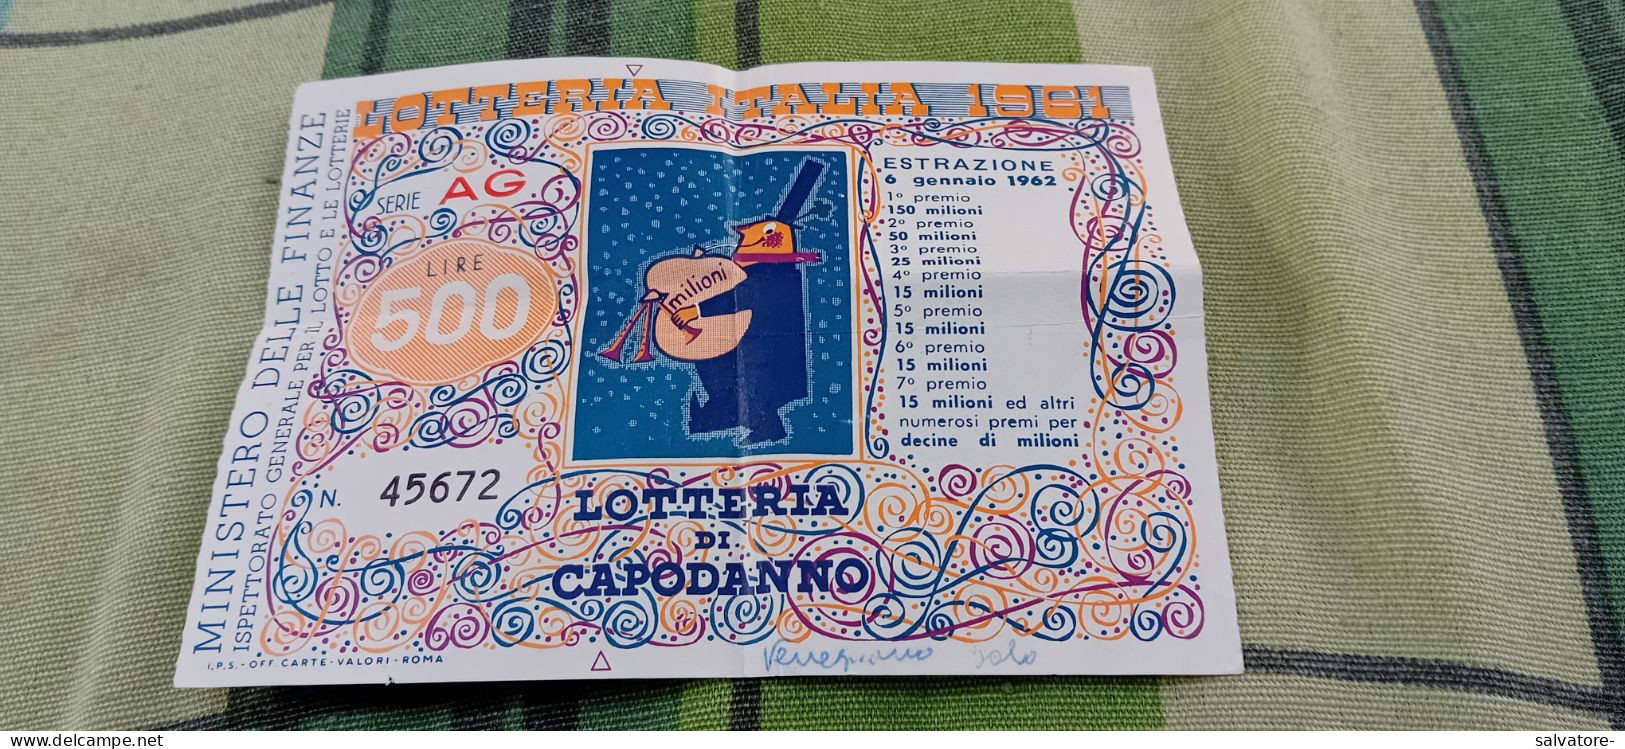 BIGLIETTO LOTTERIA AGNANO 1962 - Lotterielose